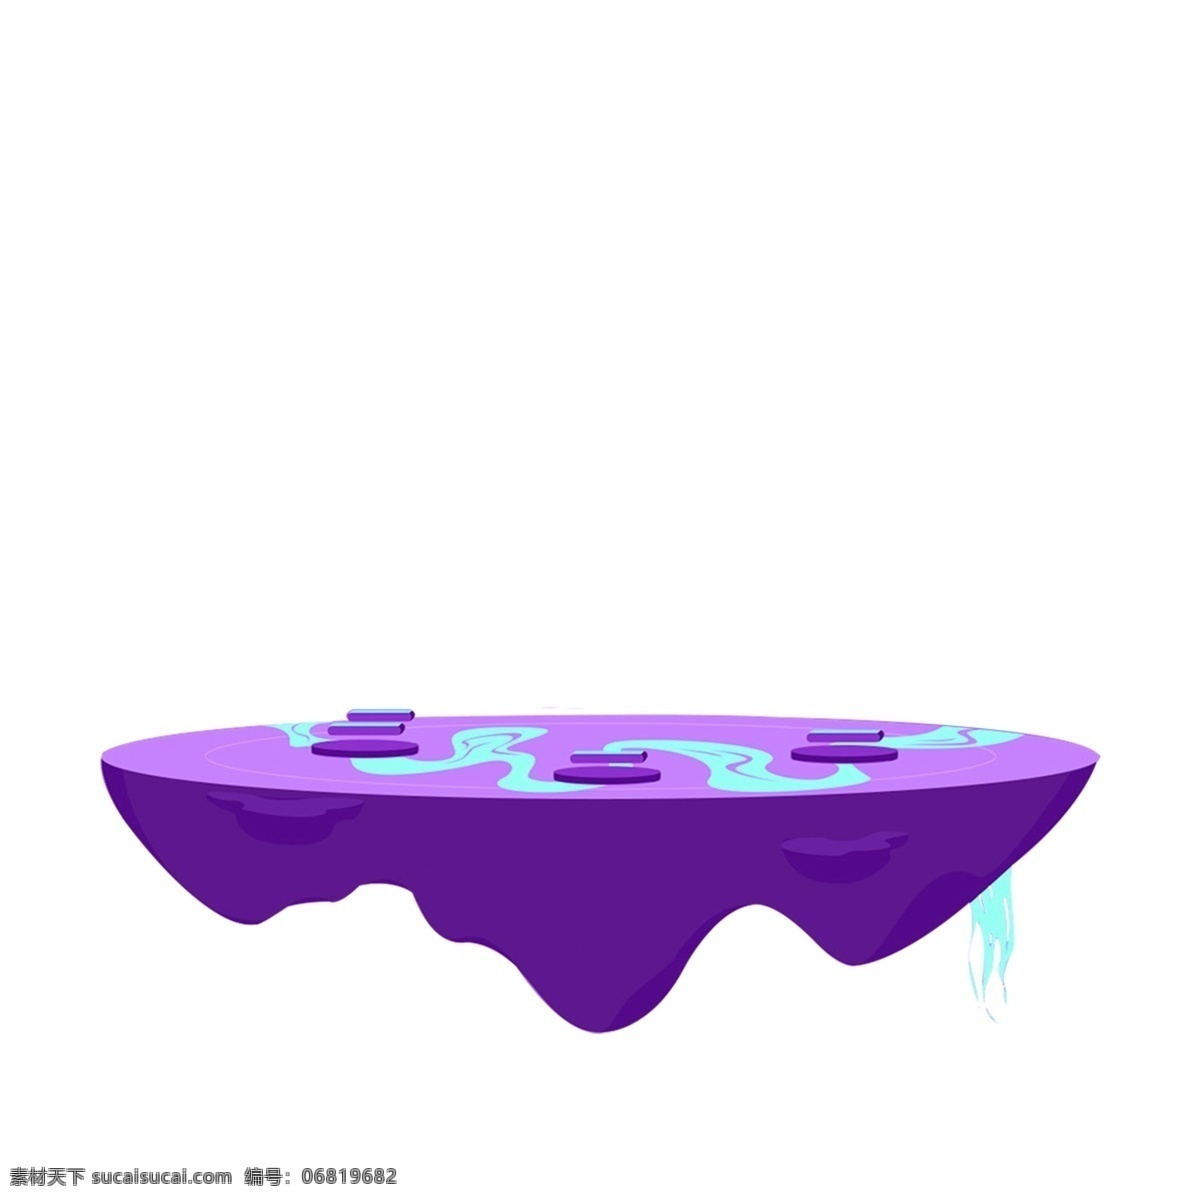 漂浮 紫色 台子 免 扣 图 卡通 紫色台子 免扣图 舞台 漂浮的天台